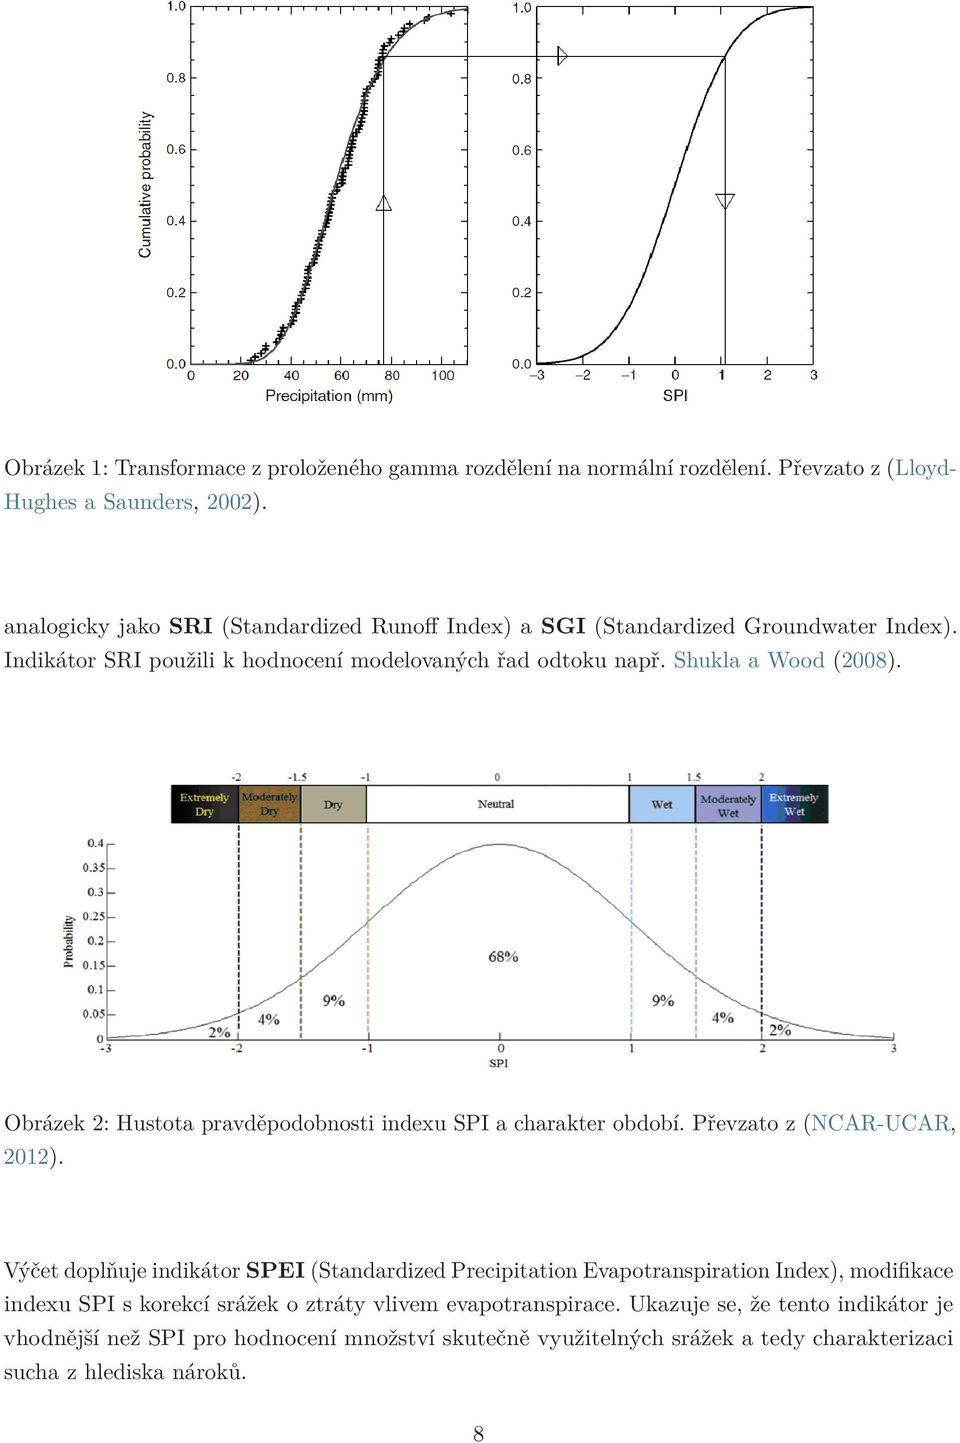 Obrázek 2: Hustota pravděpodobnosti indexu SPI a charakter období. Převzato z (NCAR-UCAR, 2012).